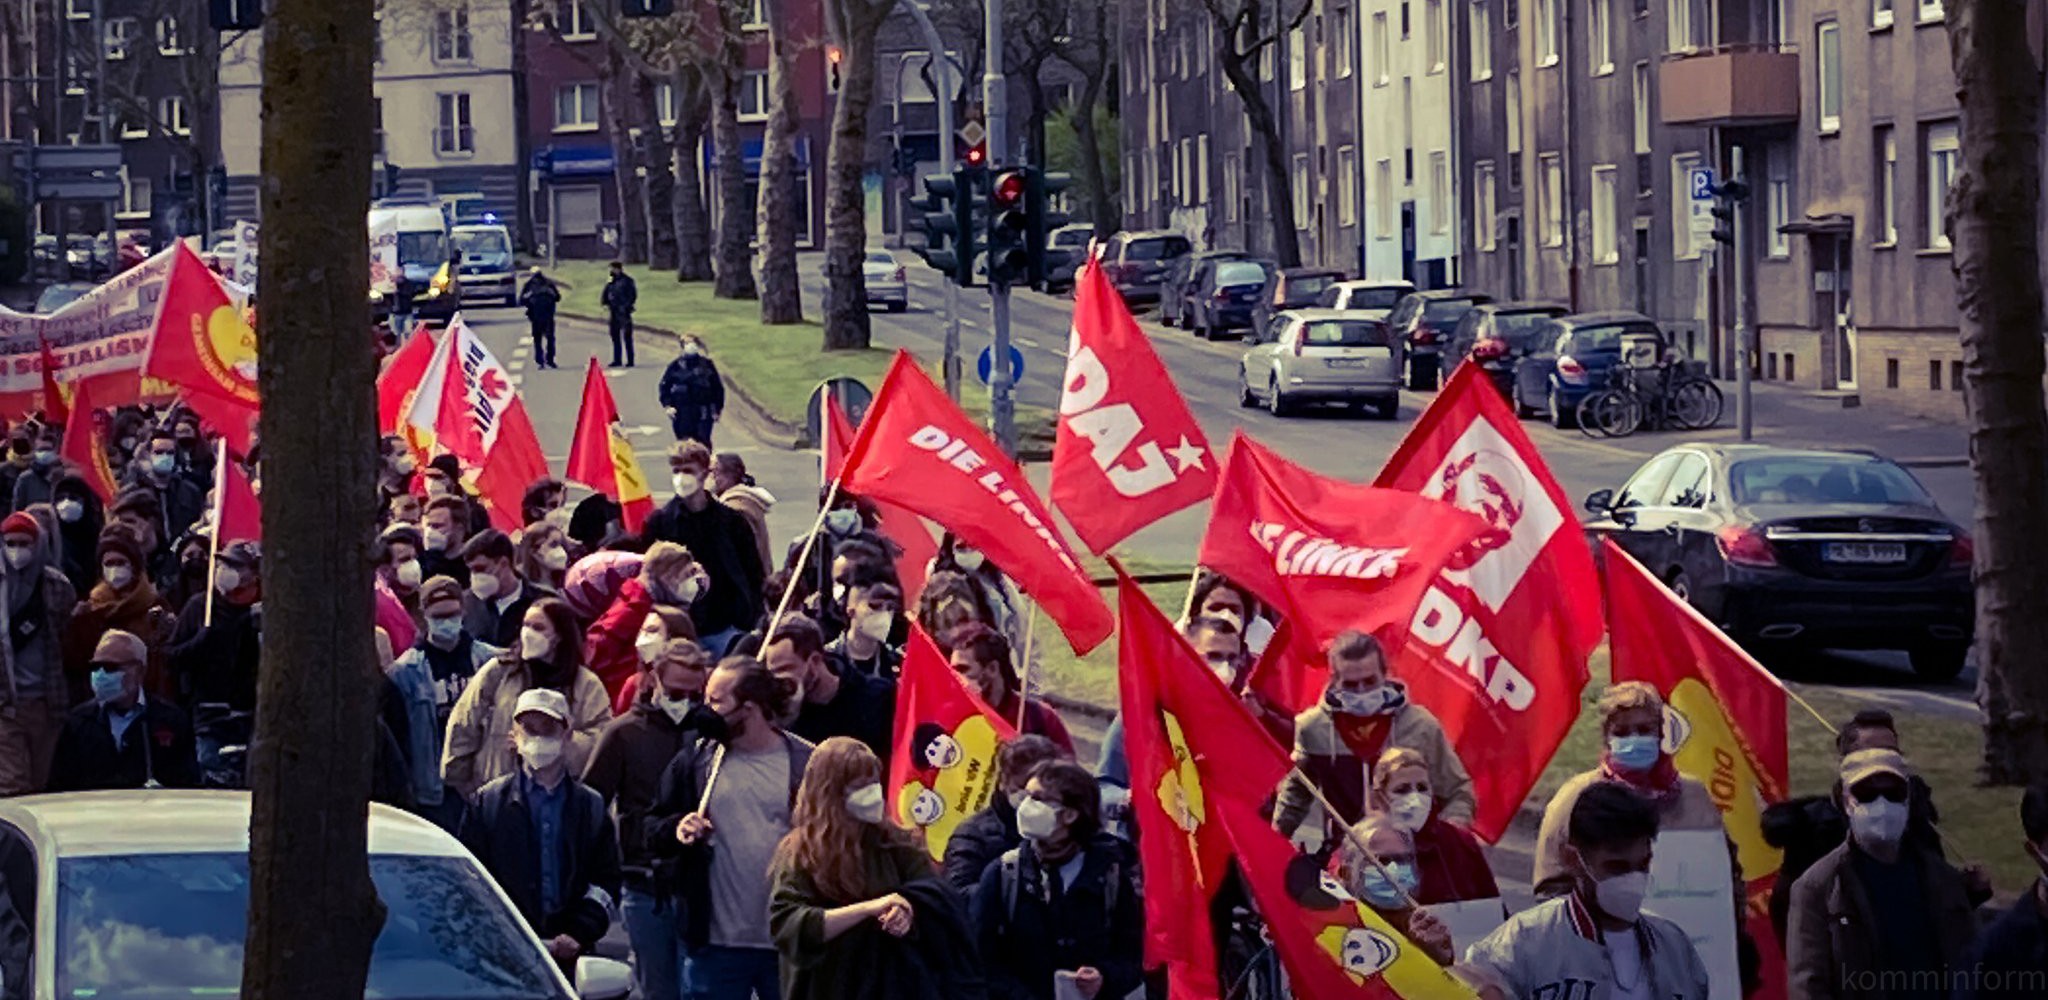 bochum - Der 1. Mai auf der Straße - - Blog, DKP in Aktion